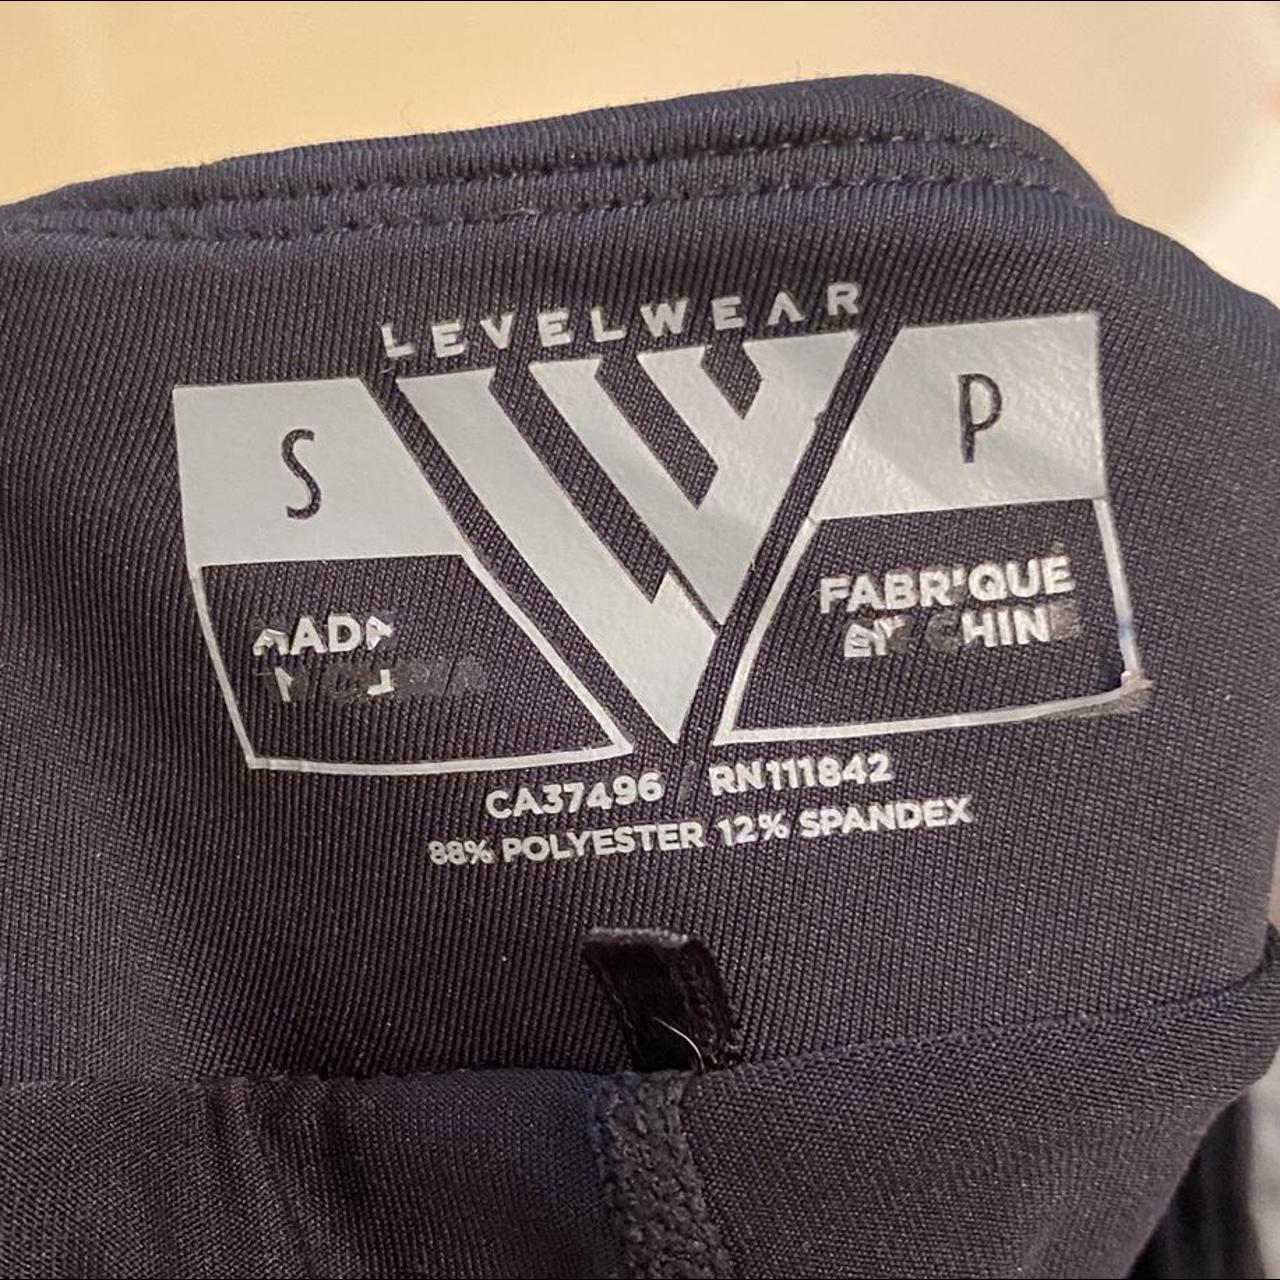 Levelwear black golf skirt / skort Great condition I... - Depop